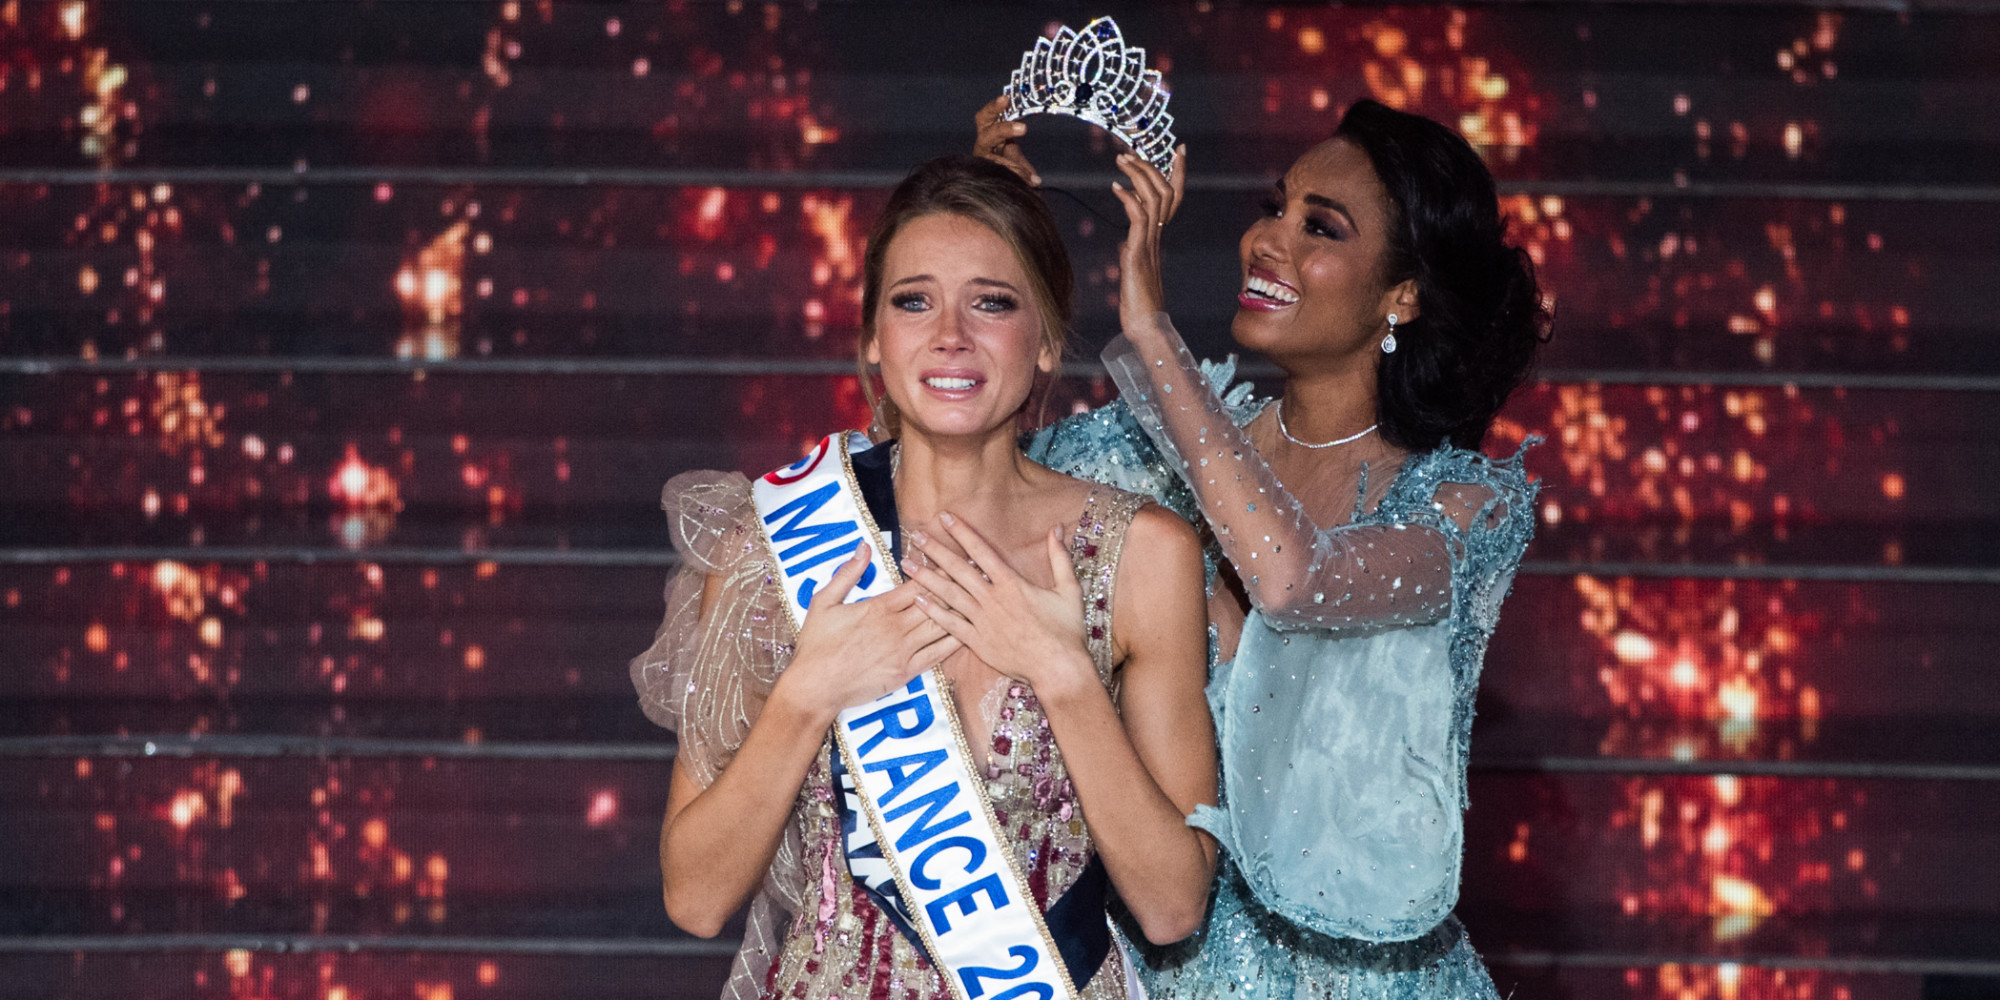     Amandine Petit est élue Miss France 2021

